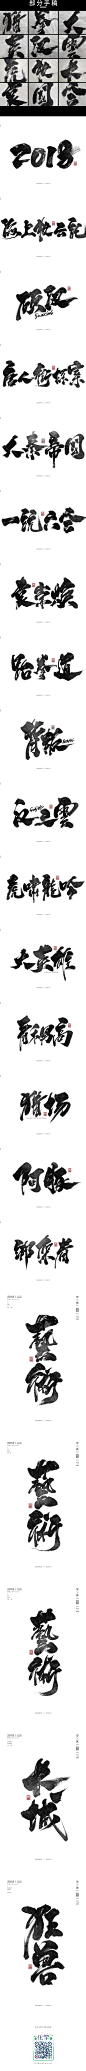 2018~书法字体来一发！-字体传奇网-中国首个字体品牌设计师交流网